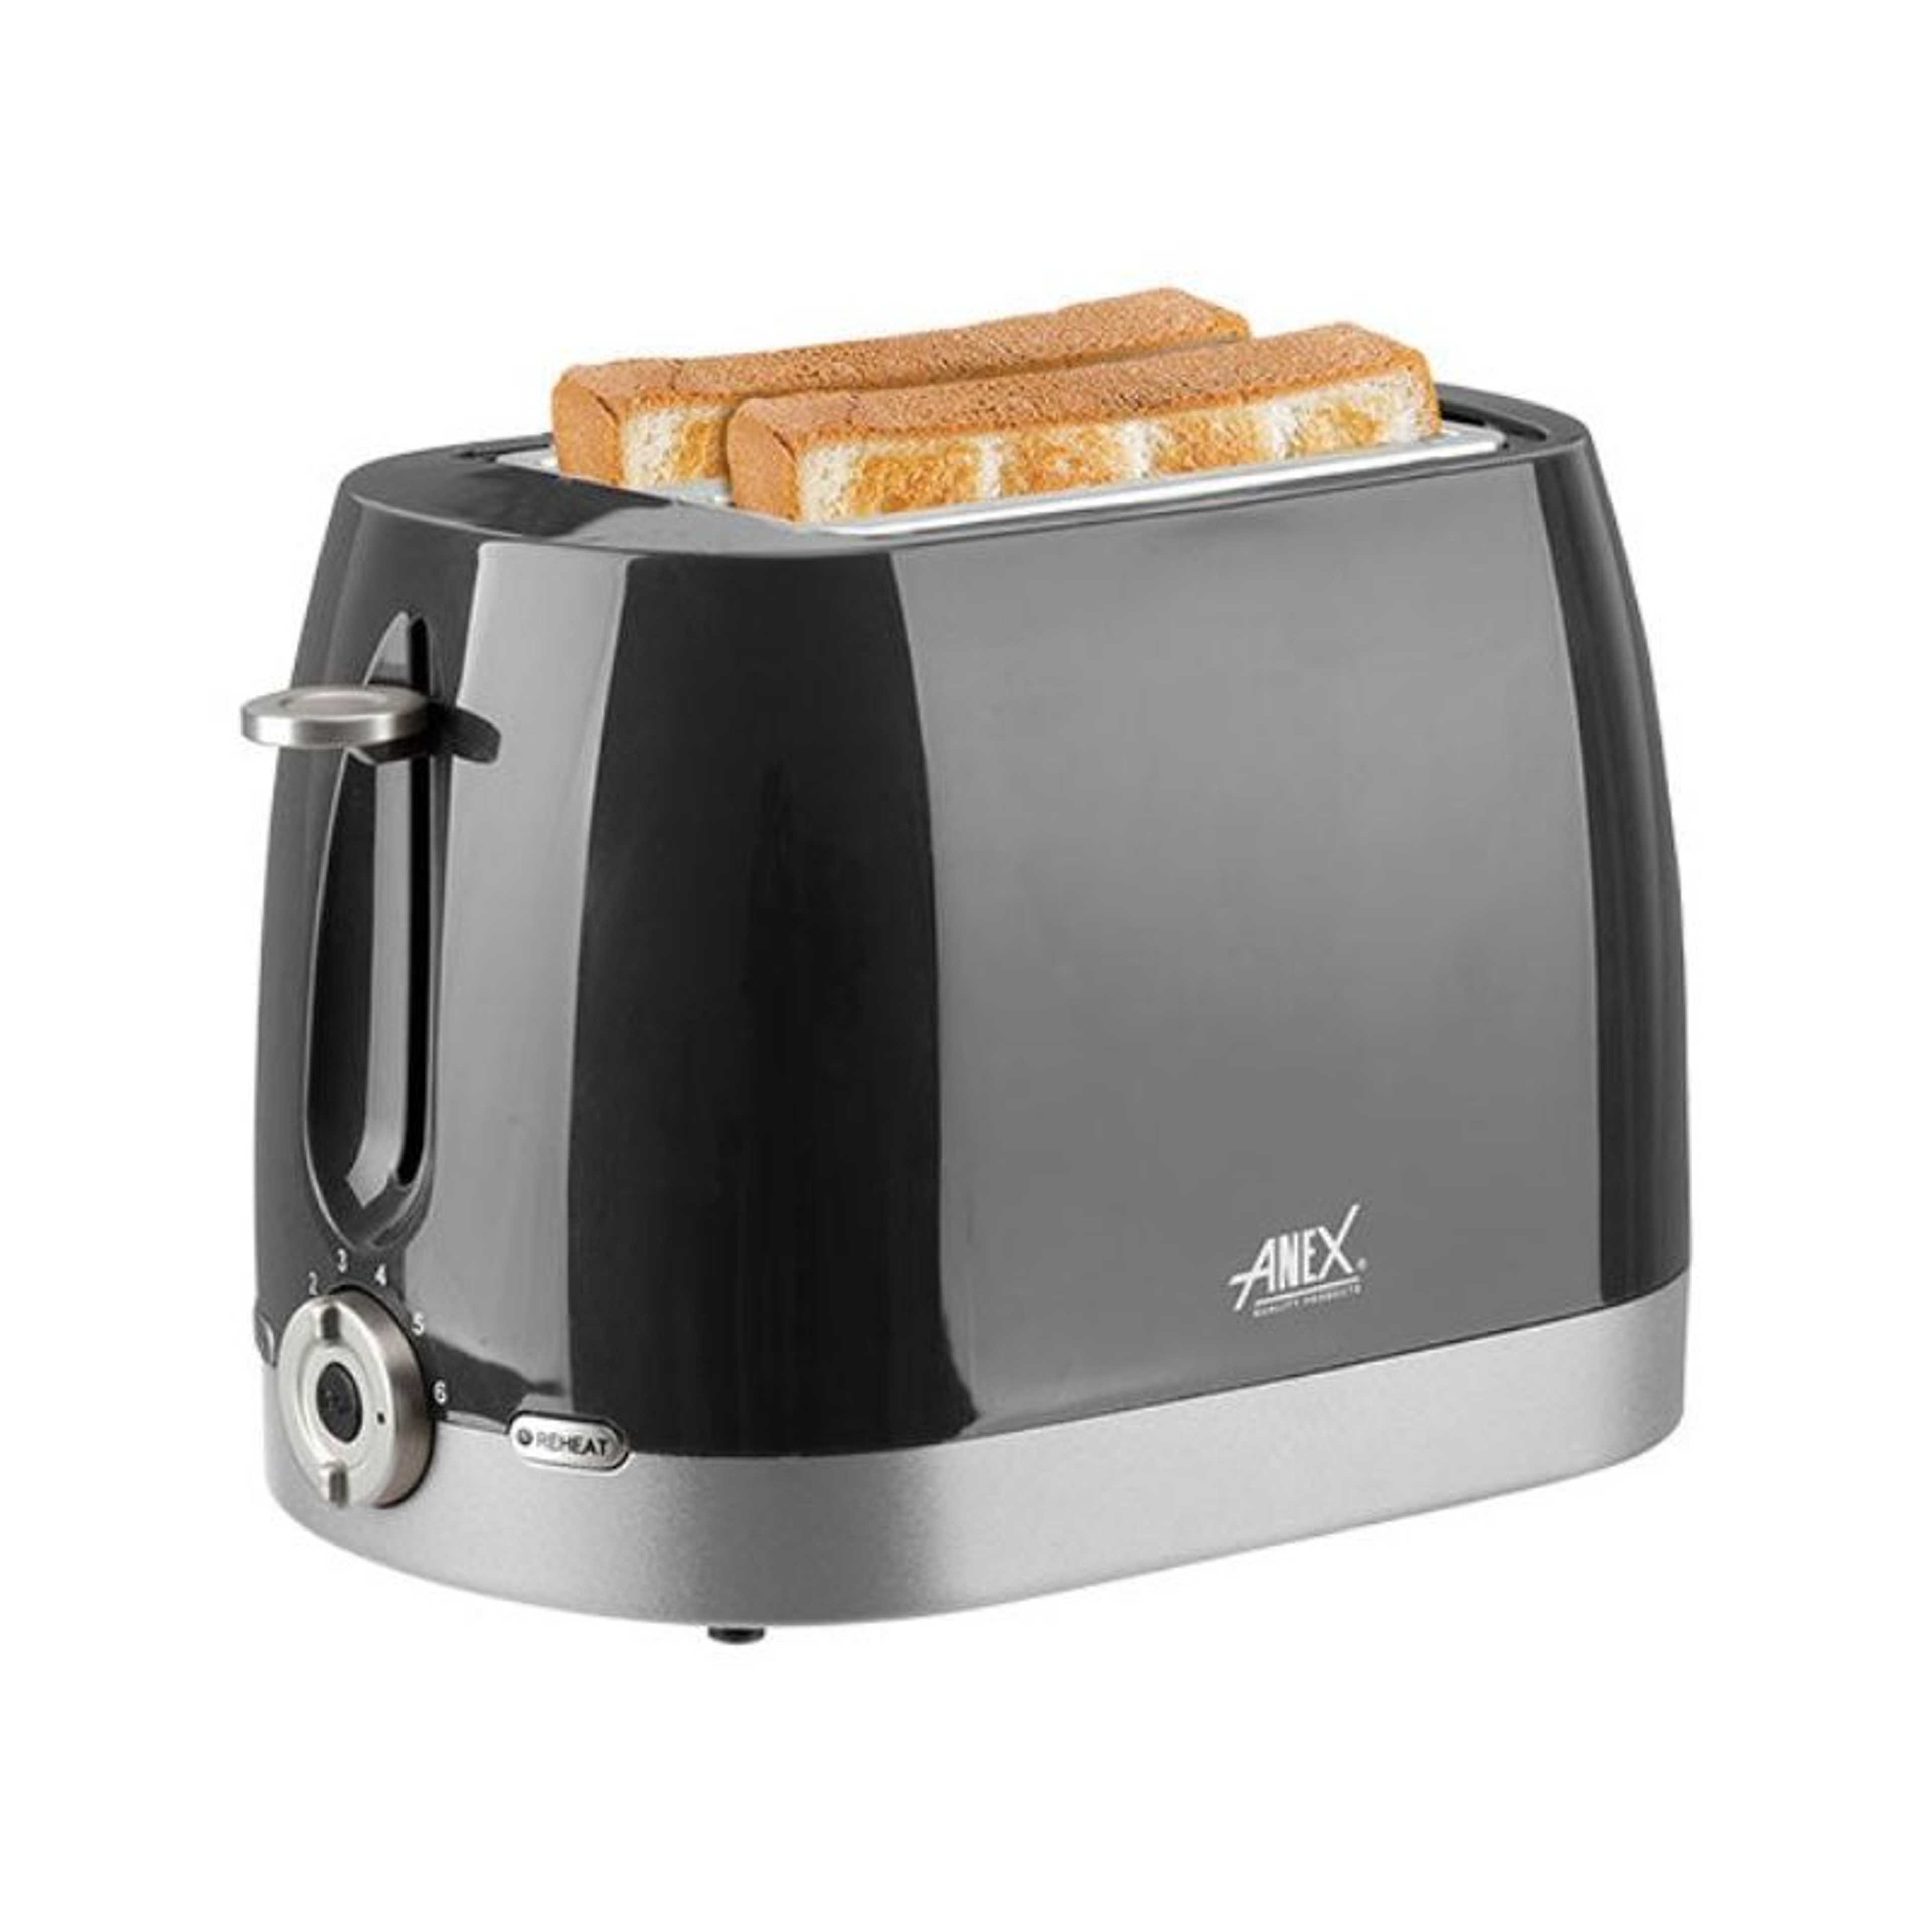 ANEX Toaster AG-3018 | Kitchen Appliance Pakistan